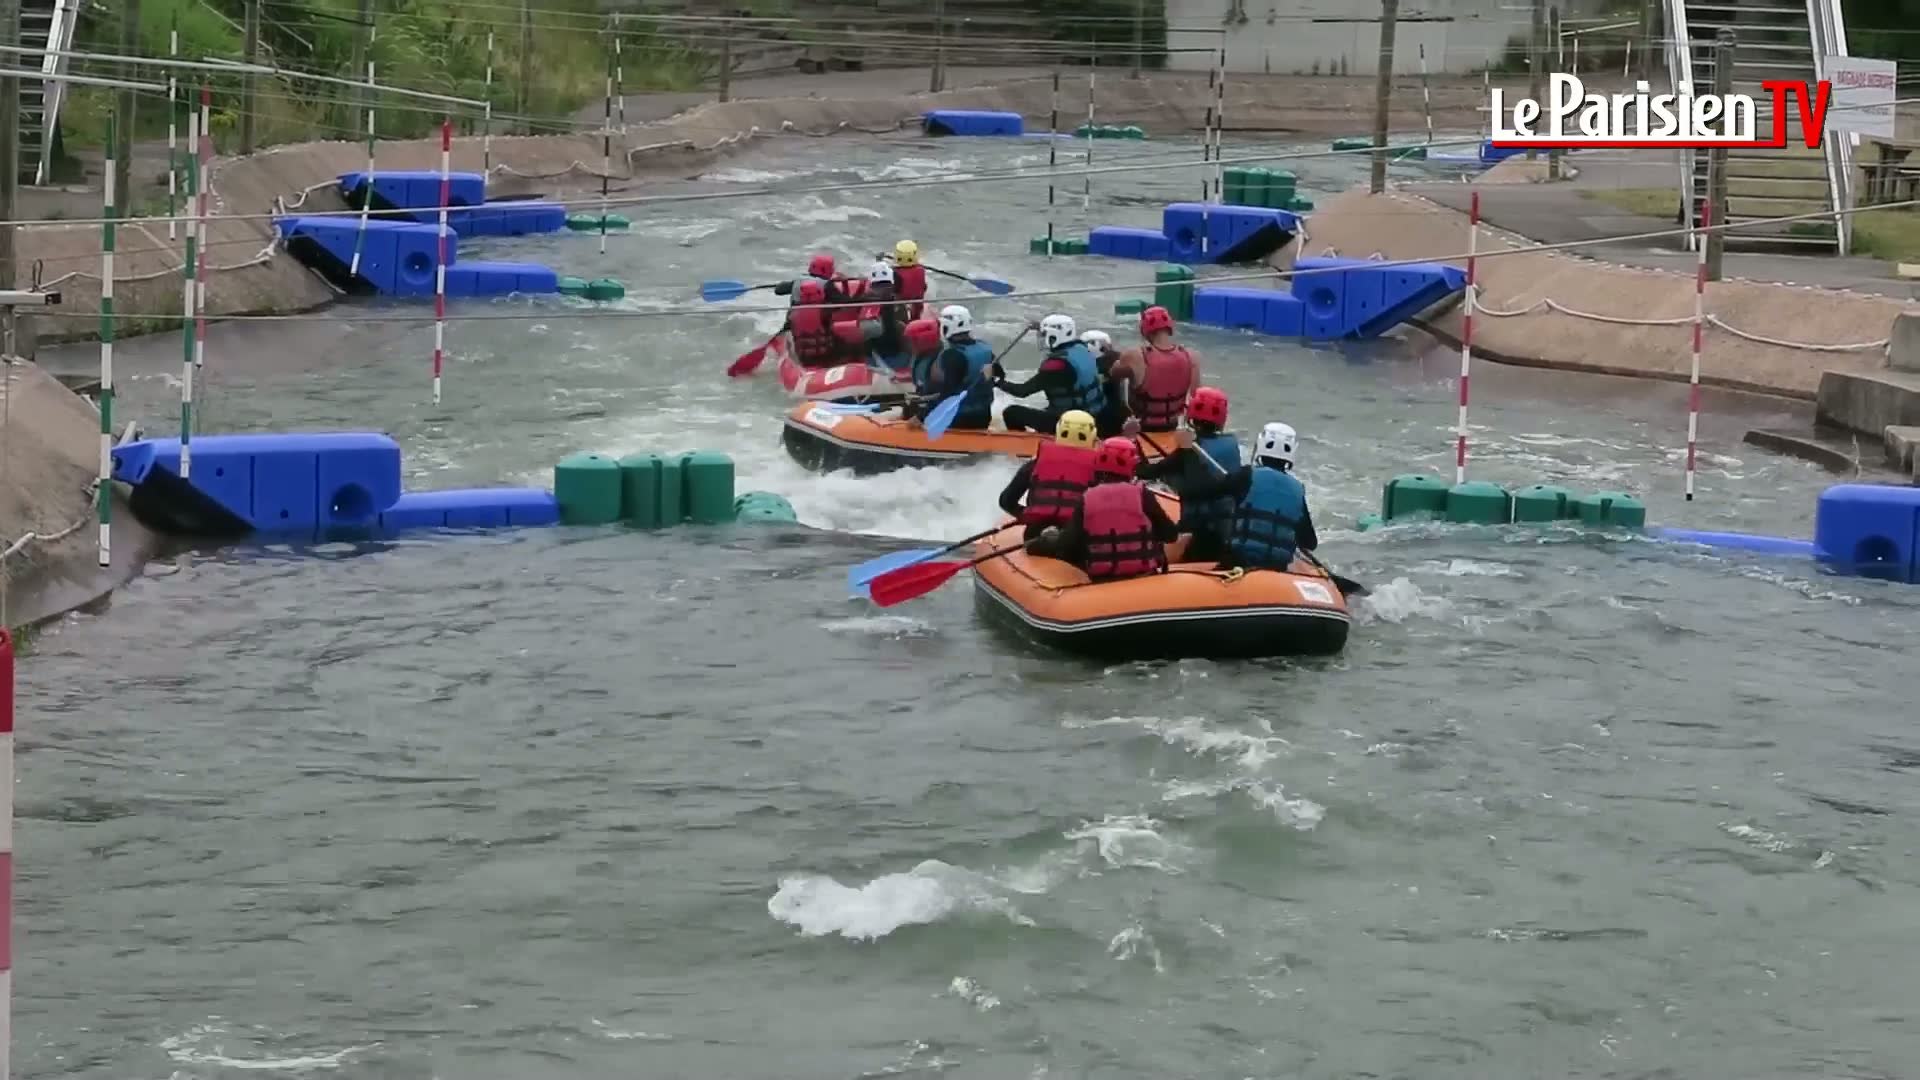 On a testé le rafting à l'Ile de Loisirs de Cergy-Pontoise - Vidéo  Dailymotion